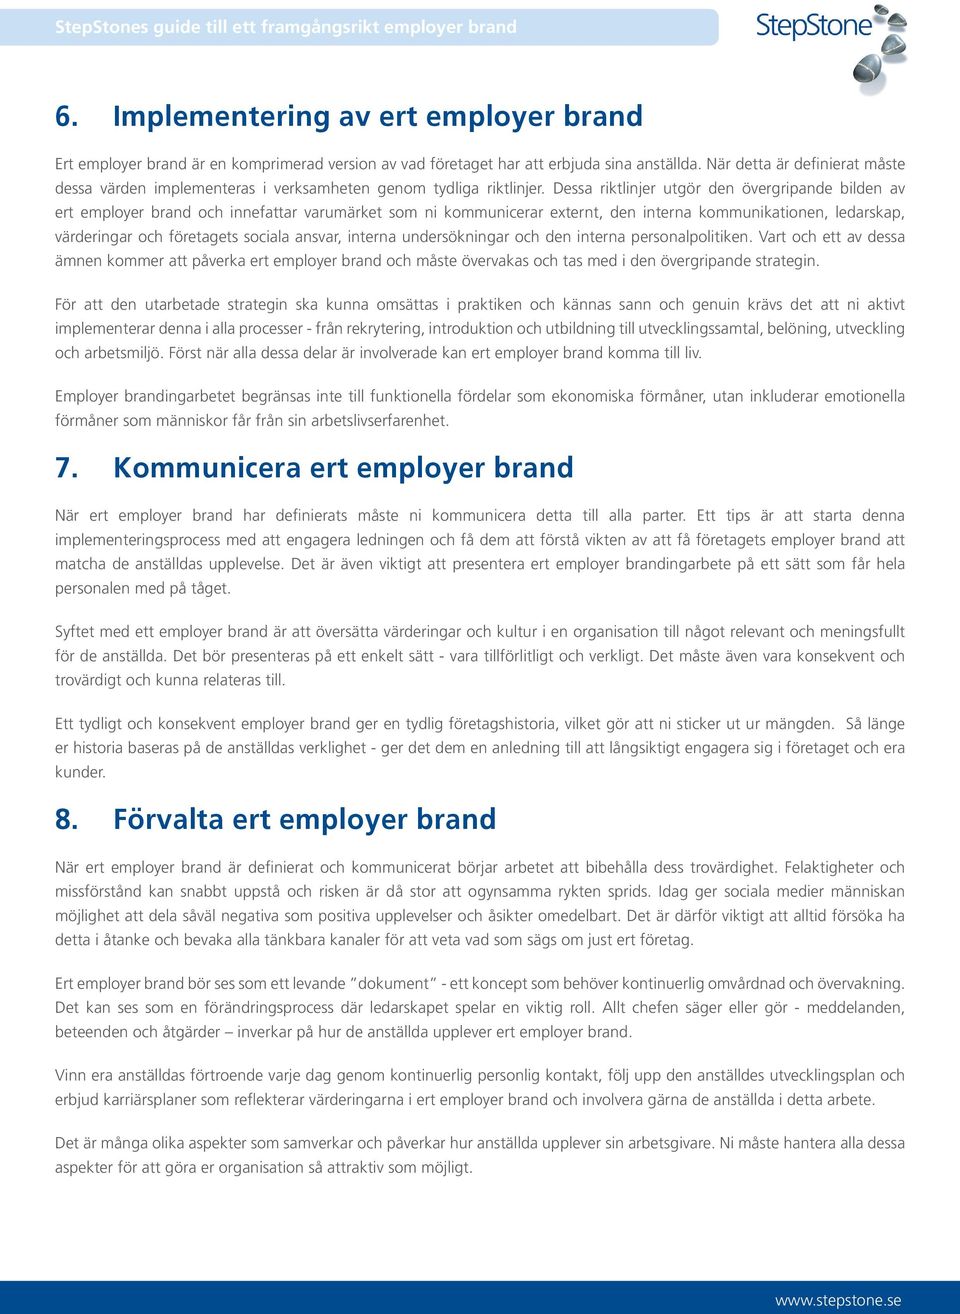 Dessa riktlinjer utgör den övergripande bilden av ert employer brand och innefattar varumärket som ni kommunicerar externt, den interna kommunikationen, ledarskap, värderingar och företagets sociala